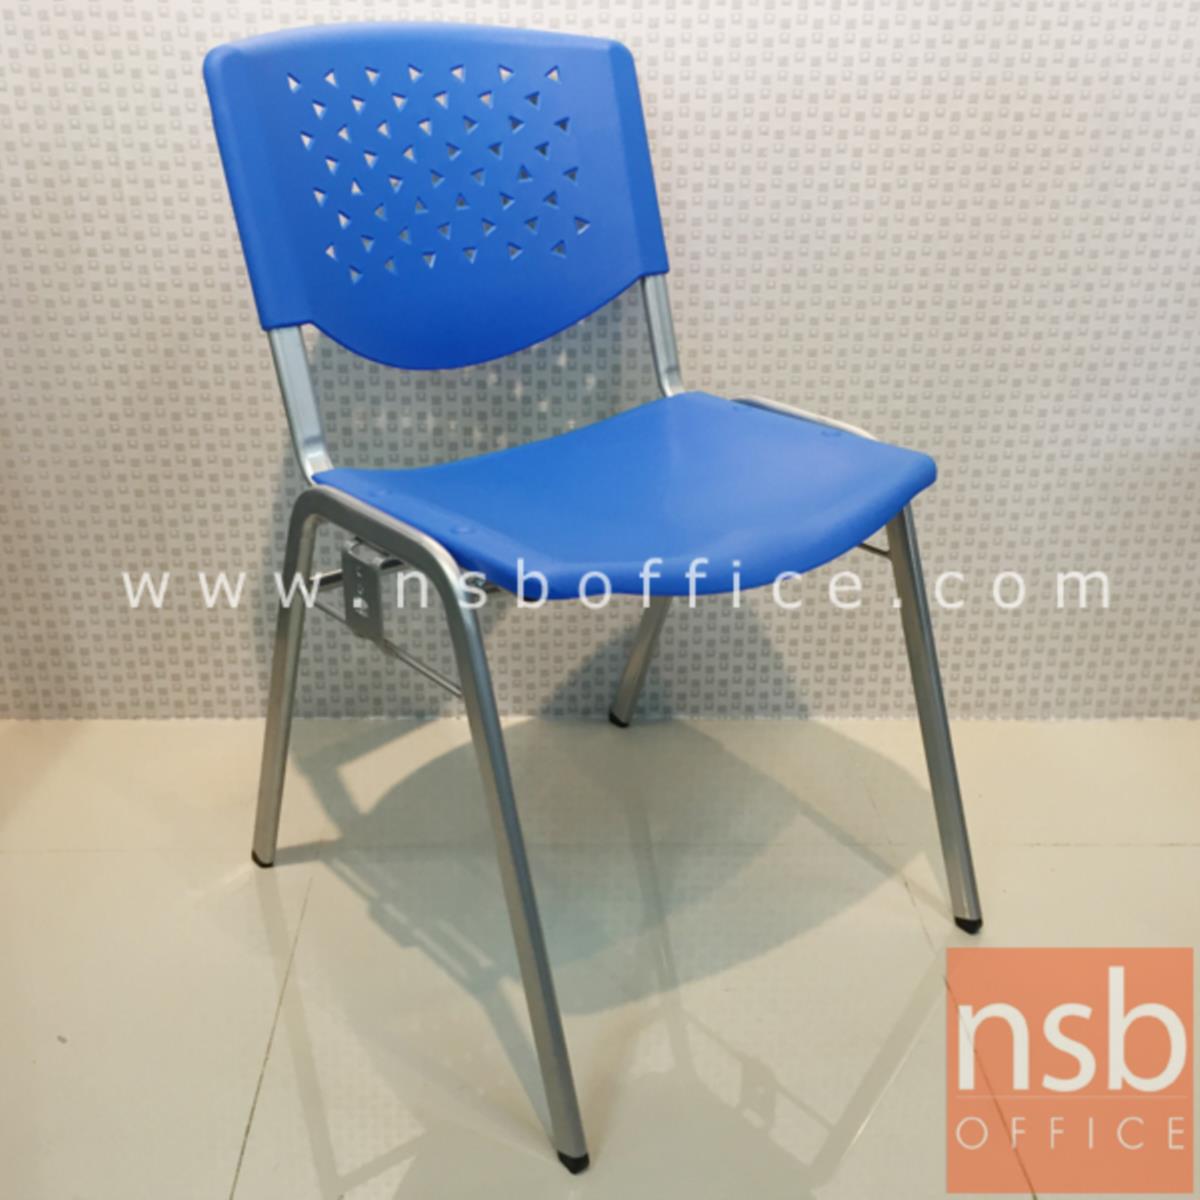 เก้าอี้อเนกประสงค์เฟรมโพลี่ รุ่น A236-626  ขาเหล็ก